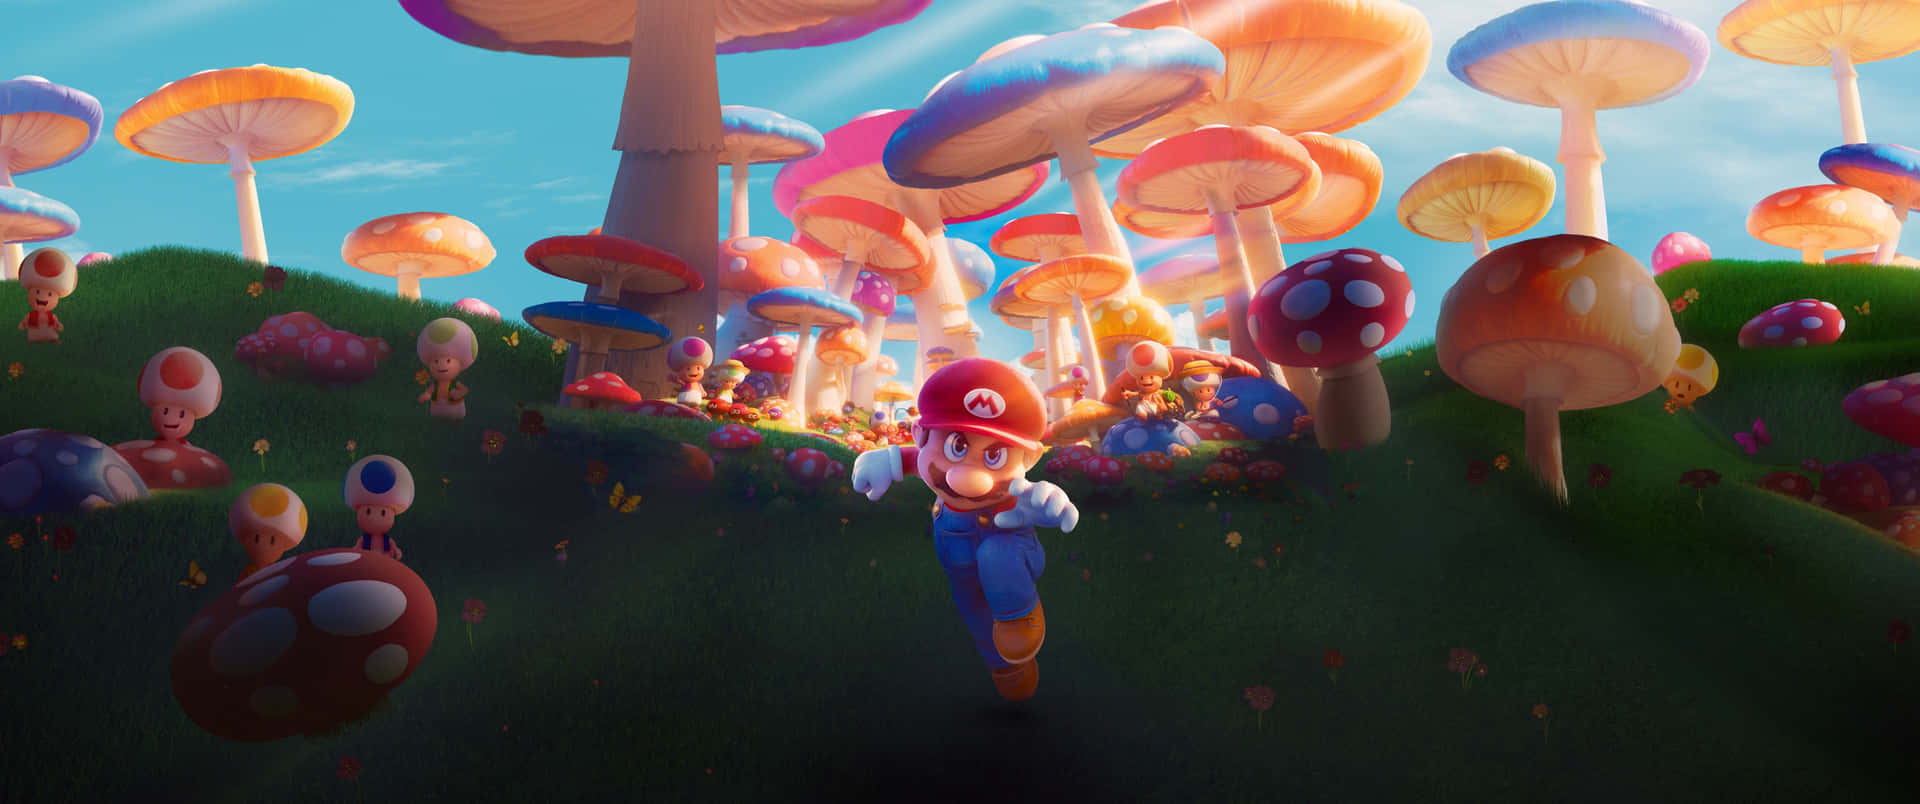 Mario og svampe i et felt Wallpaper